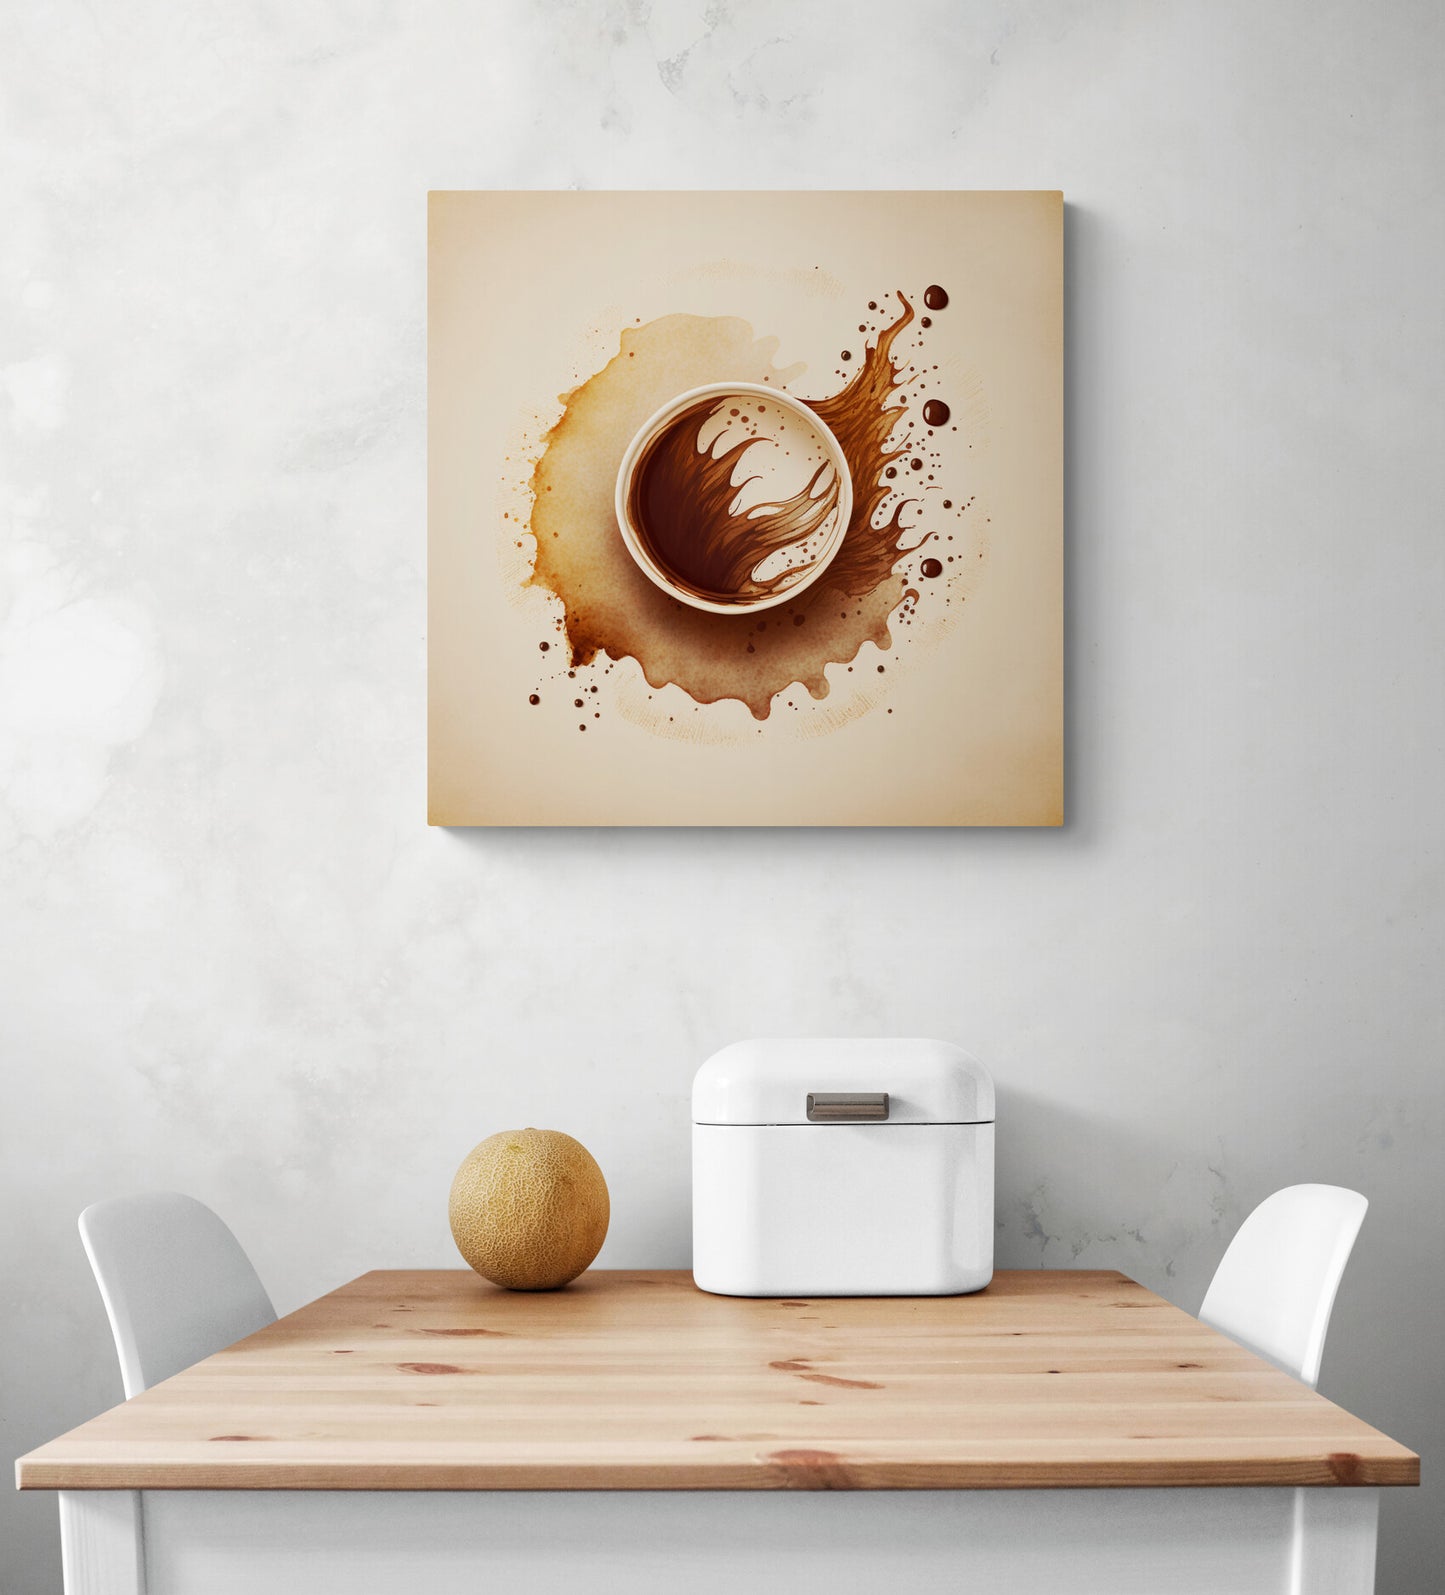 Cadre toile de taille moyenne, accrocher sur un mur blanc, aux couleurs légères, mélange de marron et de beige. Ambiance calme et apaisante, au style minimaliste. Une tasse de café, symbolisant la routine, est mise en contraste avec l'expression de mouvement et de désordre de l'aquarelle.